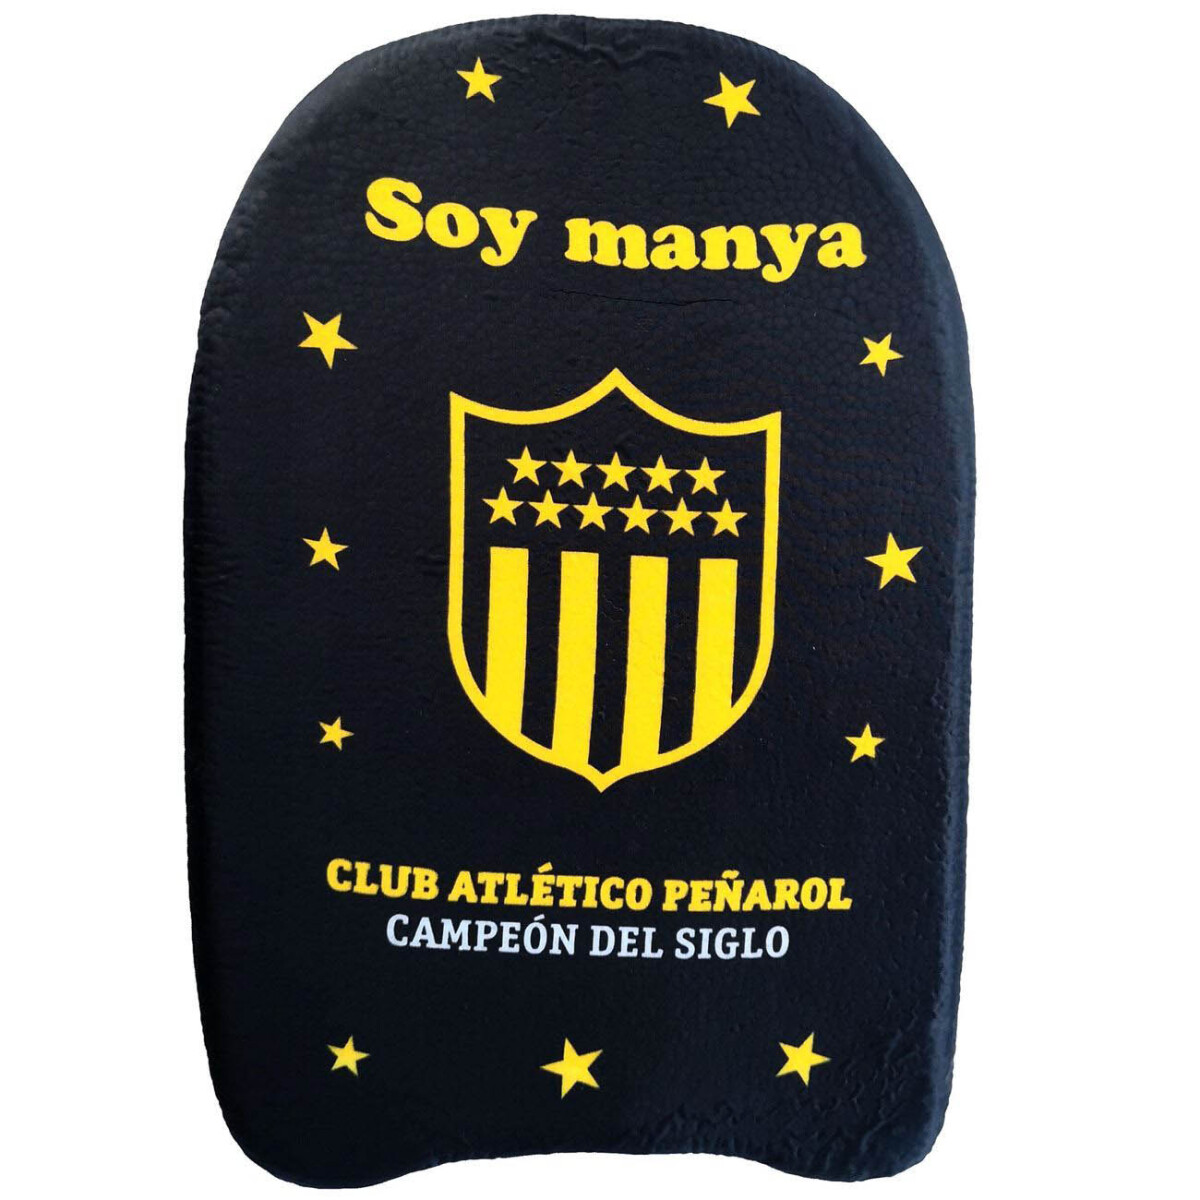 Tabla Morey 45 cm - Peñarol 